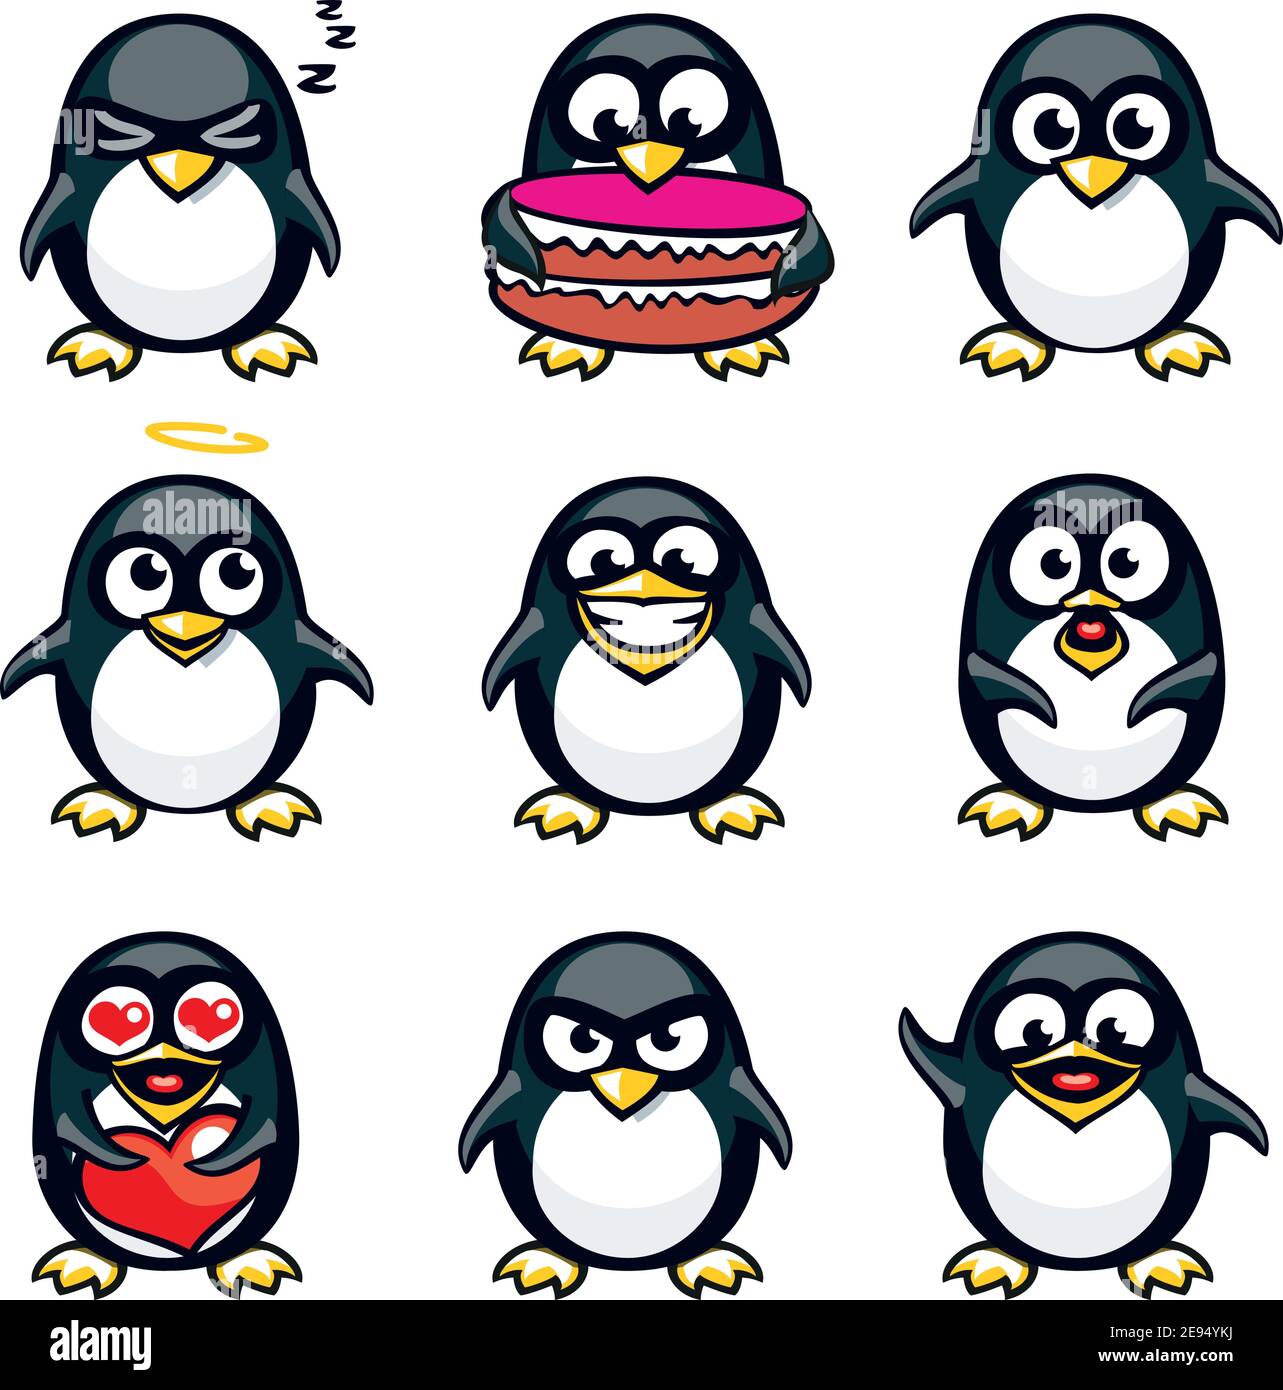 Pinguini smiley raggruppati singolarmente per copiare e incollare facilmente. Illustrazione Vettoriale